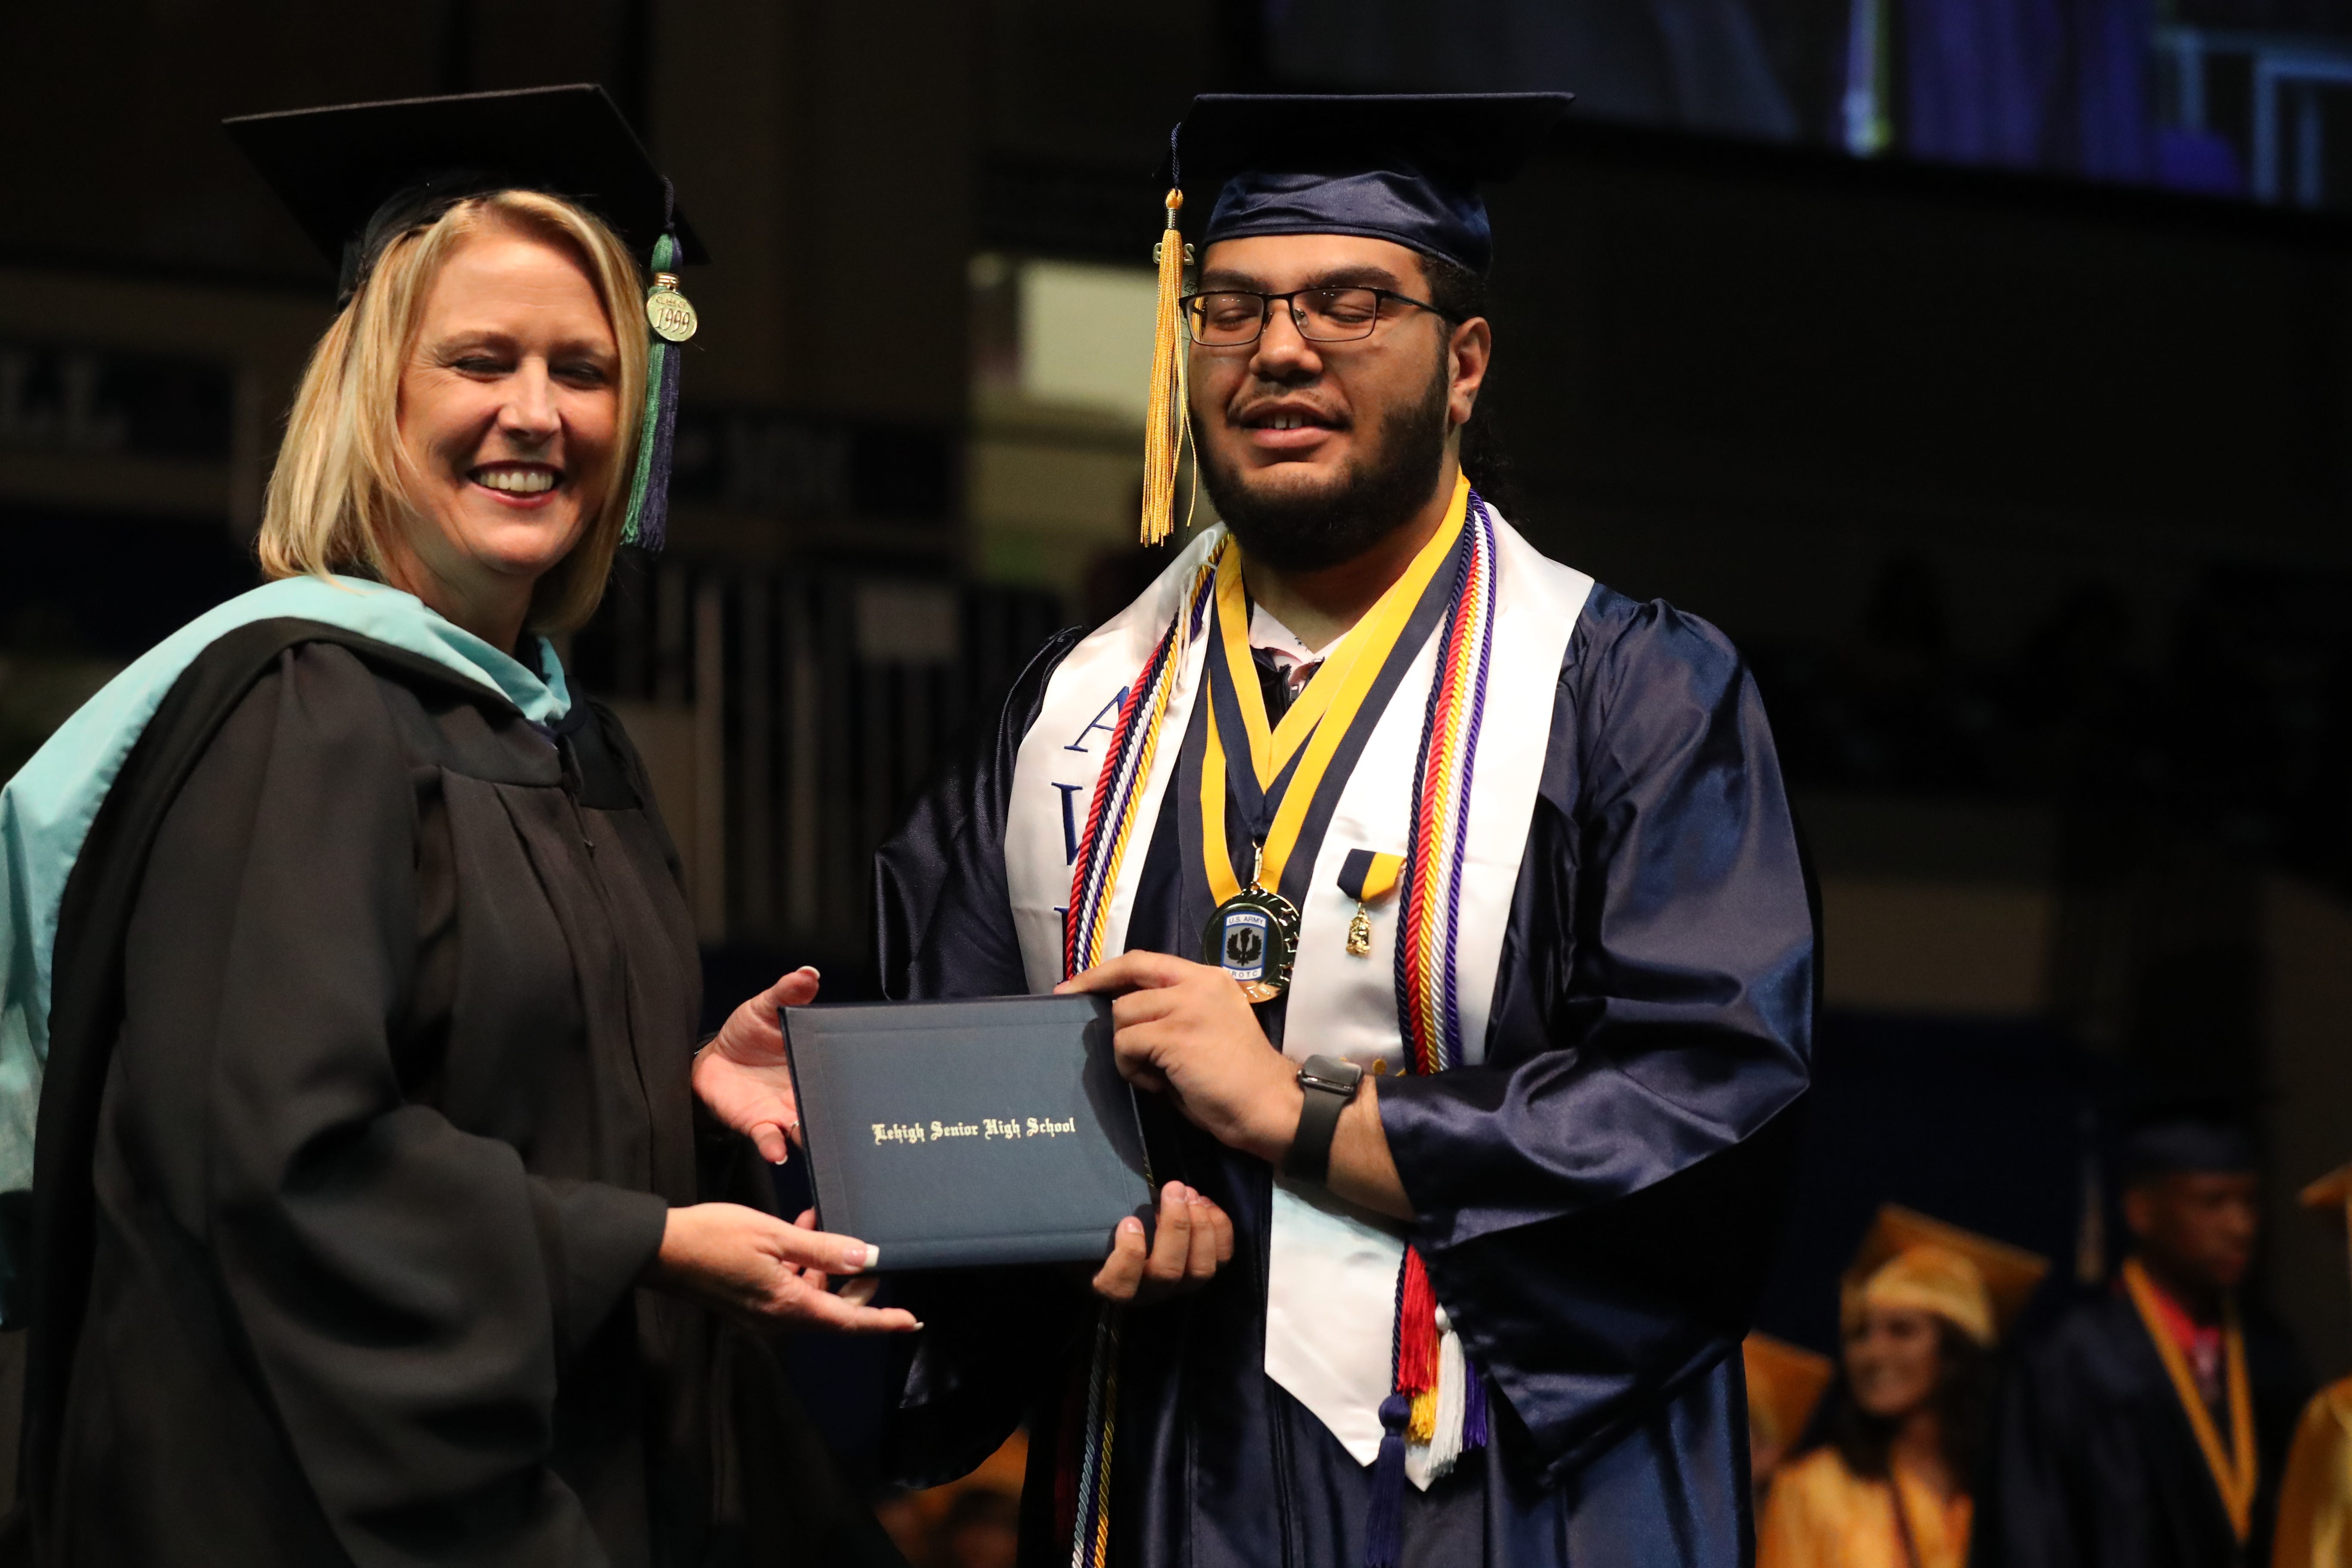 Photos from Lehigh Senior High School graduation